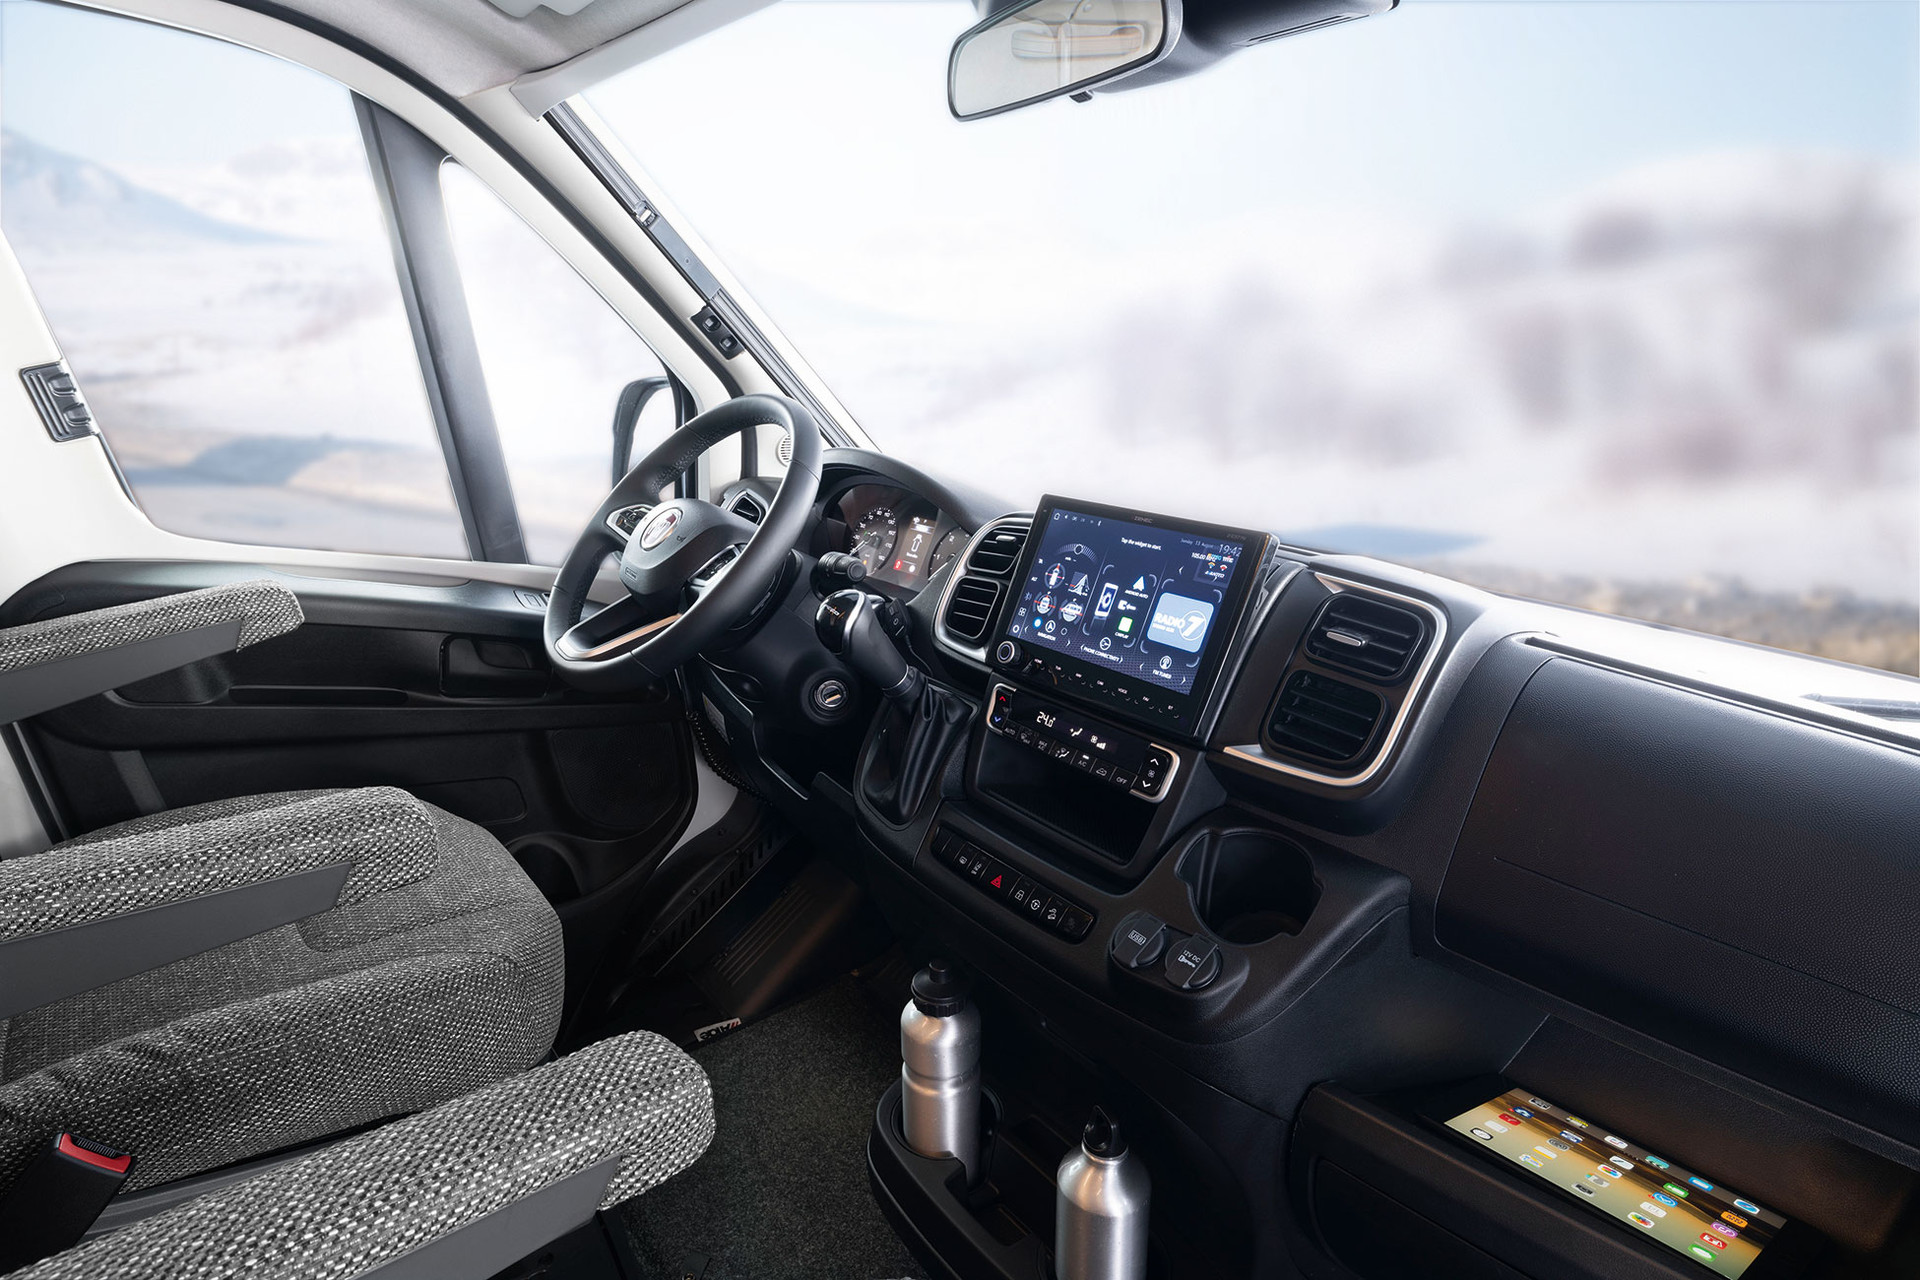 Der serienmäßige Naviceiver vereint FM/DAB+ Radio und Wohnmobil-Navigationssystem in einem Gerät. Für Übersichtlichkeit sorgt ein 9 Zoll großer Touch screen, der auch das Bild der Rückfahrkameras überträgt.